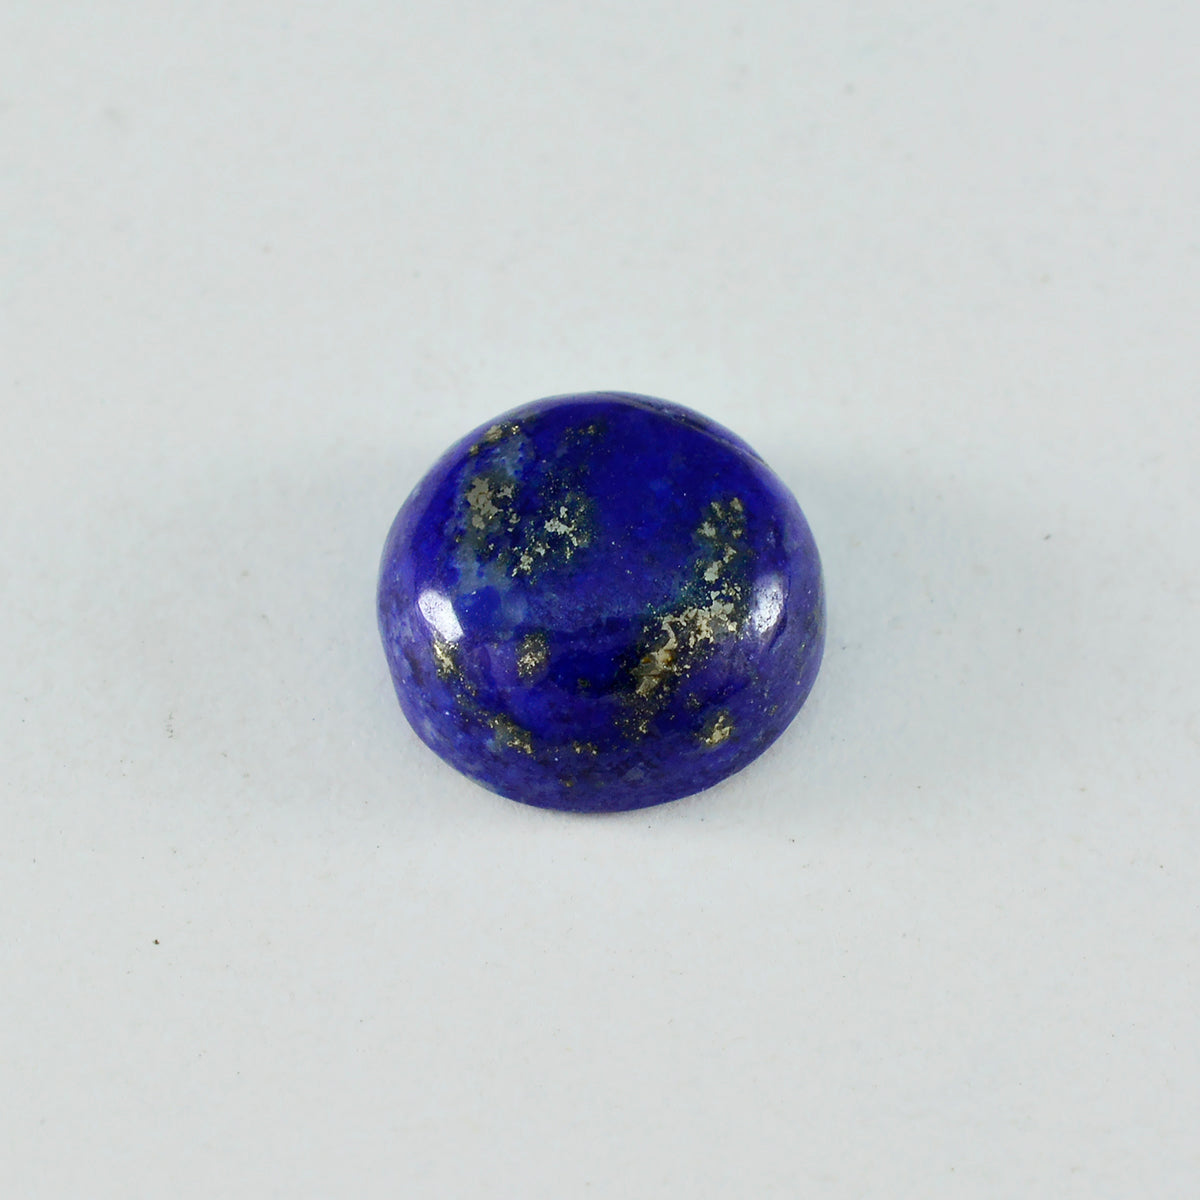 Riyogems 1 Stück blauer Lapislazuli-Cabochon, 13 x 13 mm, runde Form, fantastische Qualität, loser Edelstein